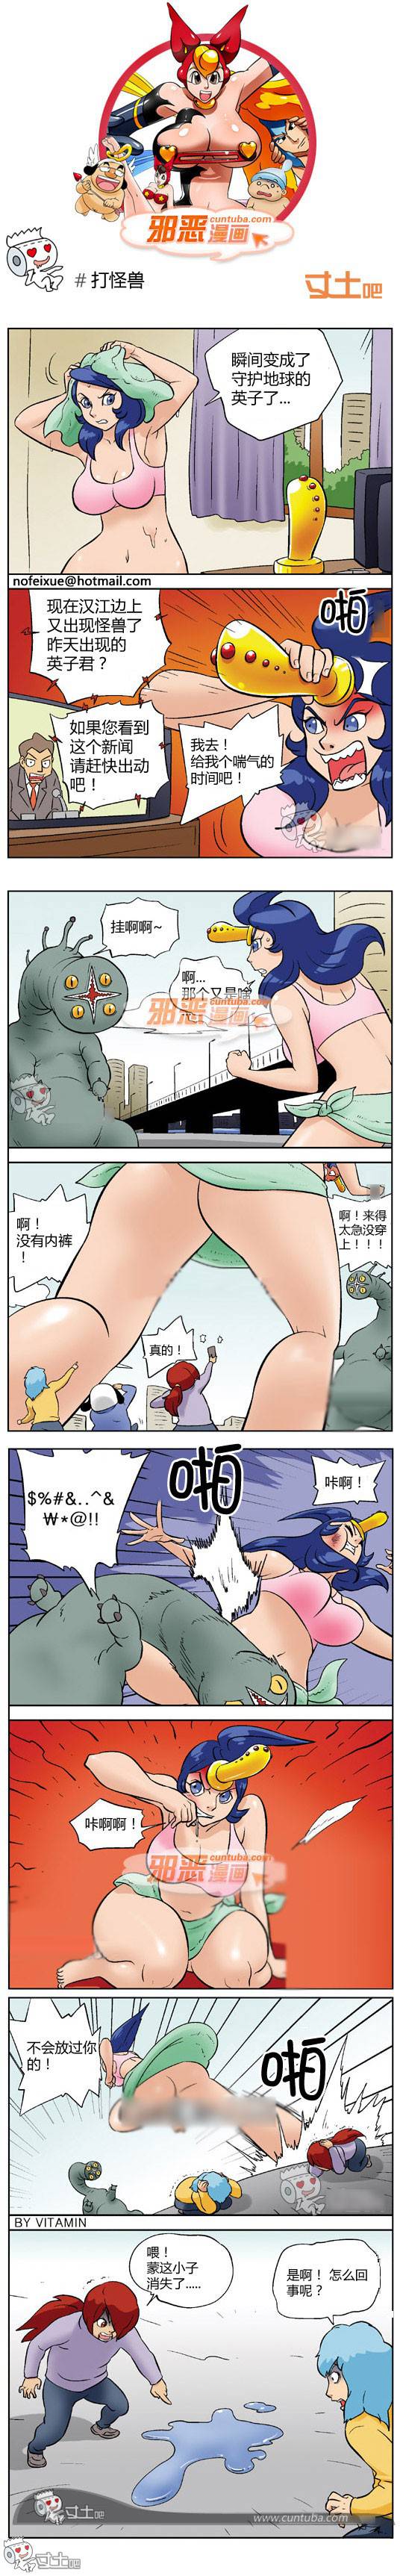 邪恶漫画爆笑囧图第253刊：如此享受的性福